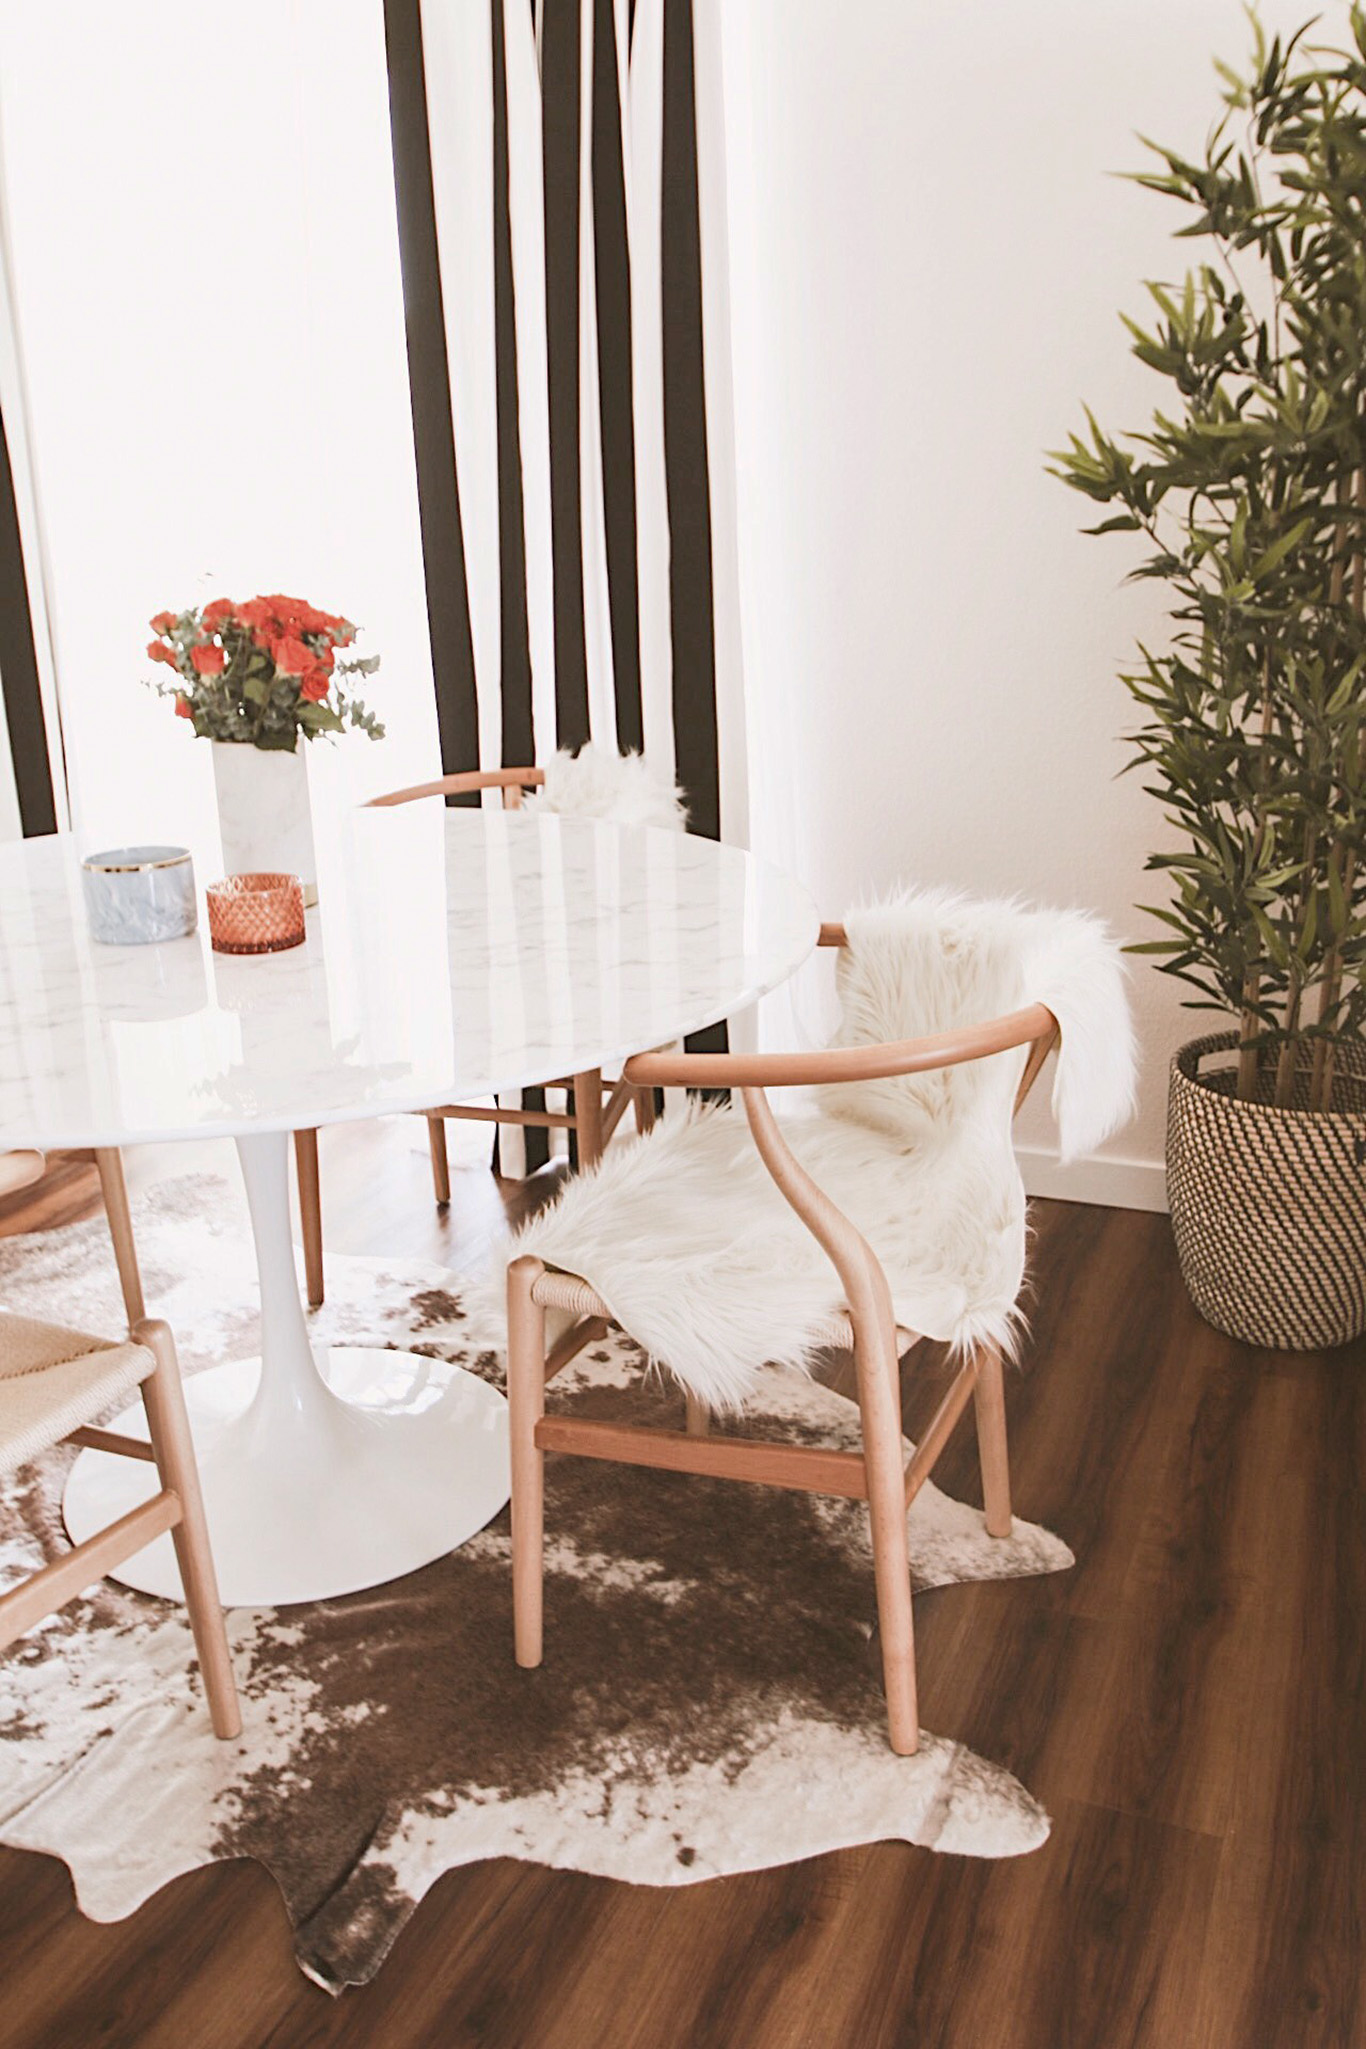 Alena Gidenko of modaprints.com shares her home decor and how she decorates a small apartment